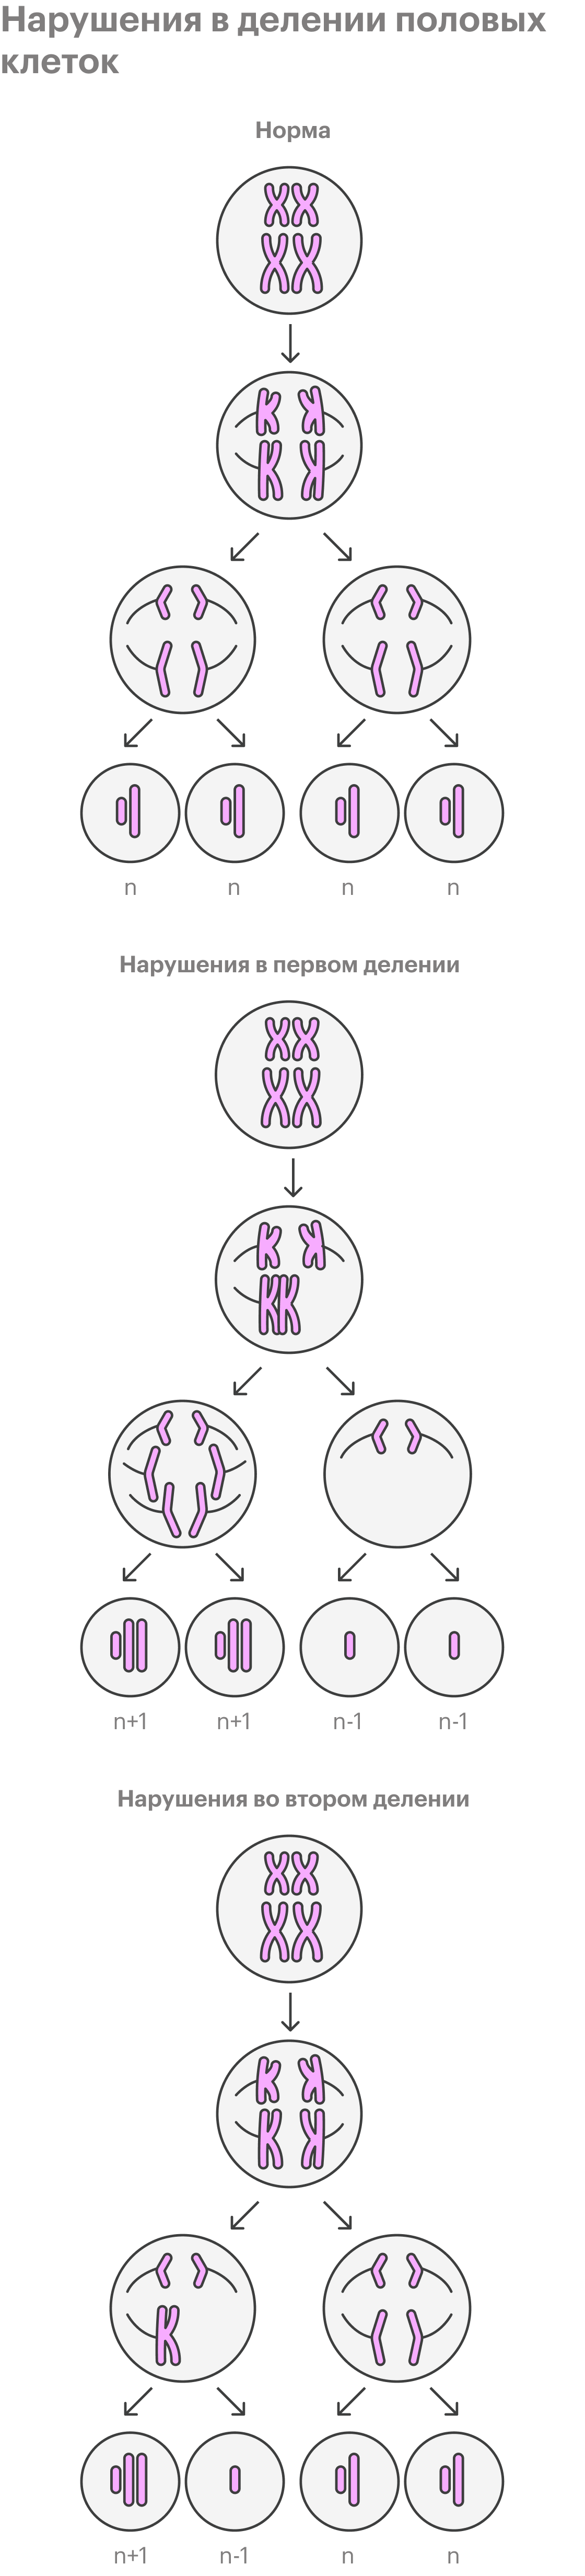 Так упрощенно можно изобразить нарушения в&nbsp;делении половых клеток — его называют мейозом. При&nbsp;нарушениях в процессе первого мейоза нормальных половых клеток не&nbsp;образуется: в&nbsp;хромосомном наборе будет либо на&nbsp;одну хромосому больше, либо на&nbsp;одну хромосому меньше. Не&nbsp;все эмбрионы с&nbsp;хромосомными нарушениями жизнеспособны, поэтому часто после оплодотворения такие яйцеклетки не&nbsp;развиваются дальше. Увеличение числа хромосом в 21-й паре приводит к&nbsp;синдрому Дауна, в 18-й паре — к синдрому Эдвардса, а в 13-й паре — к&nbsp;синдрому Патау